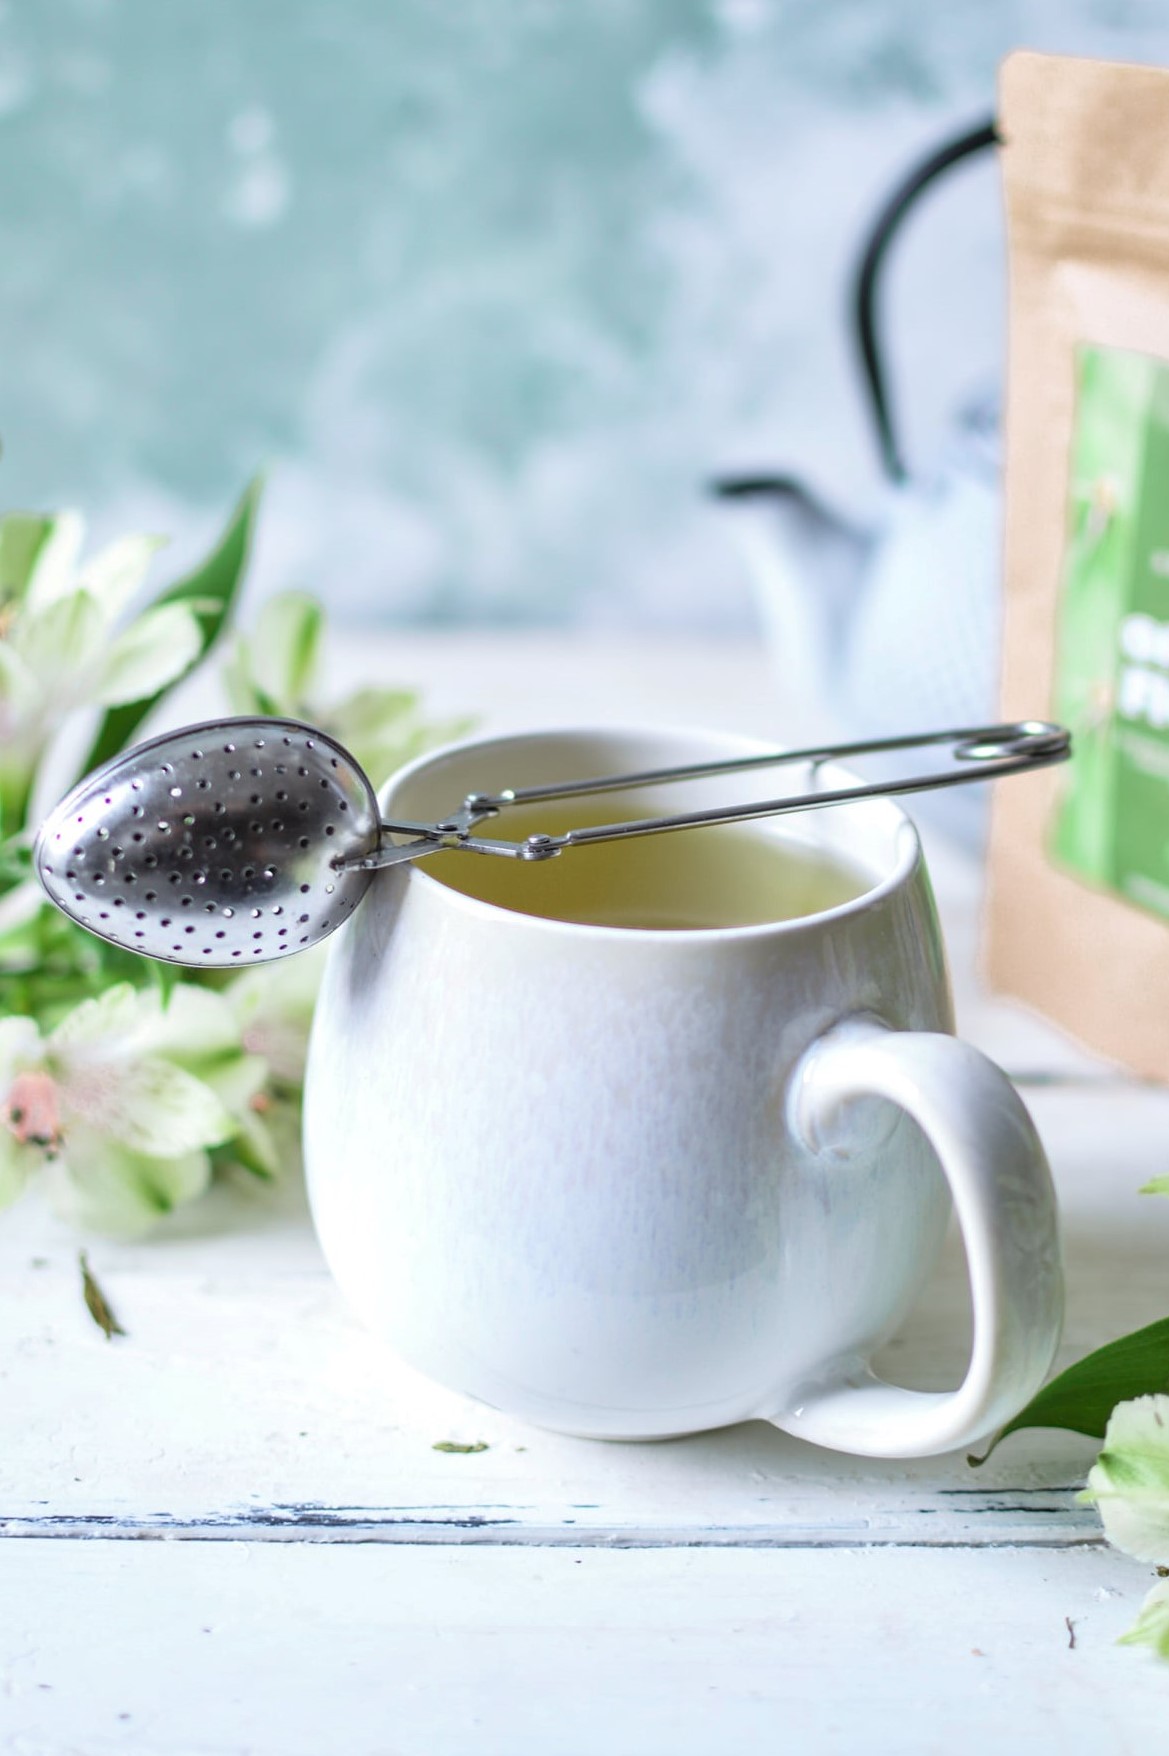 sencha najlepsza herbata zielona herbata opuncja figowa herbata kaktusowa herbata łagodzi obyczaje warsztat herbaty